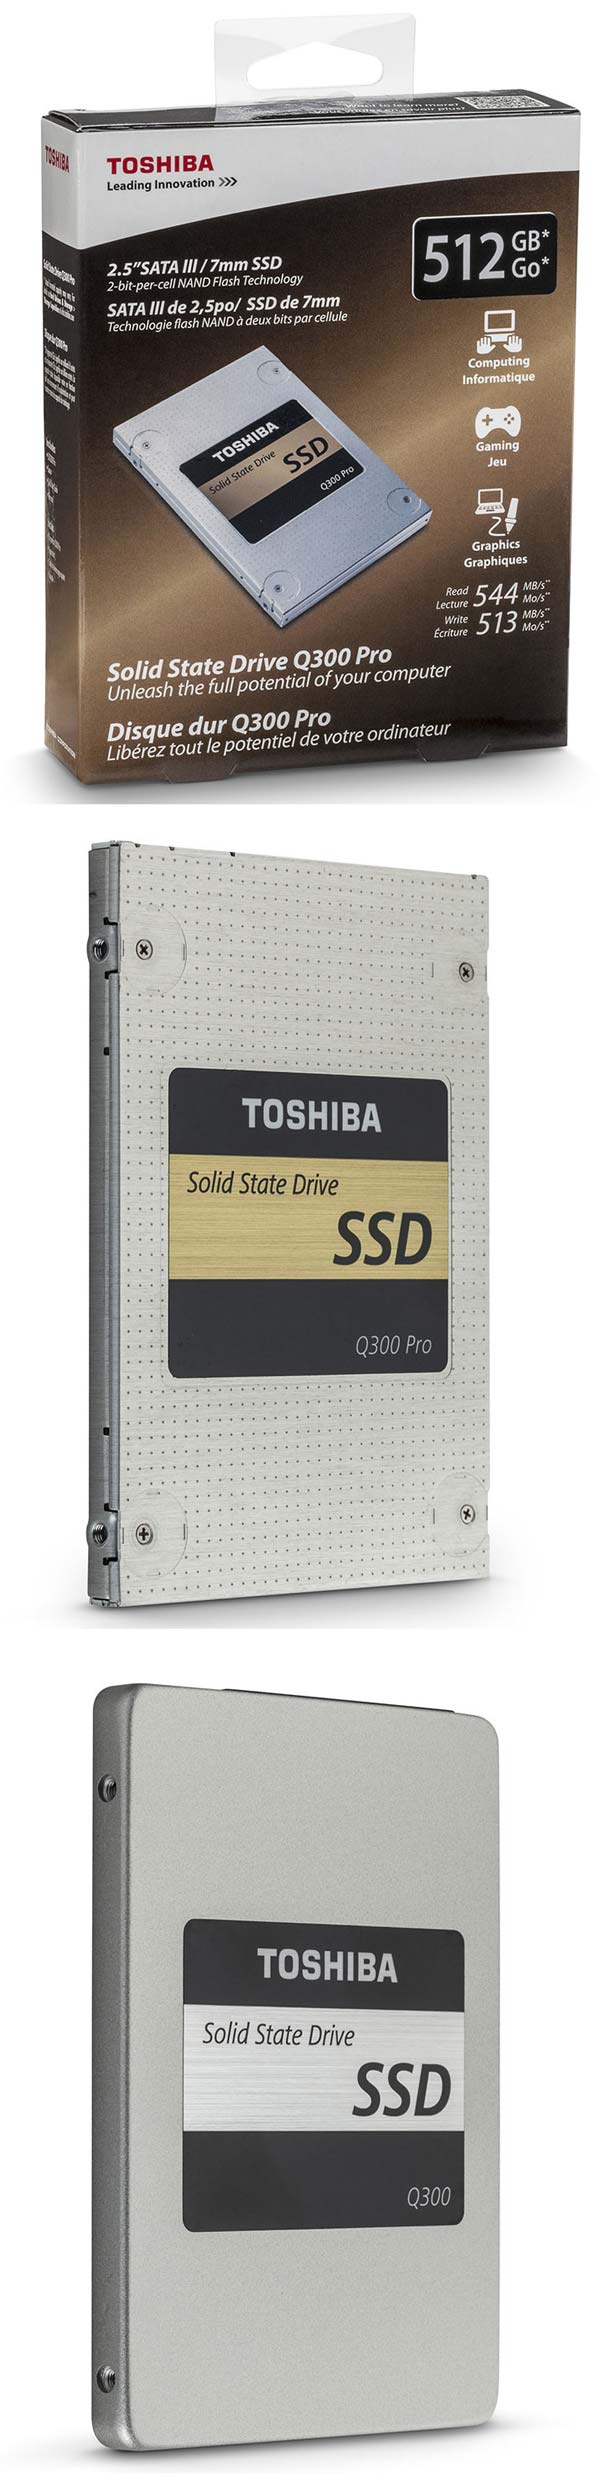 На фото твердотельные накопители Q300 и Q300 Pro от Toshiba